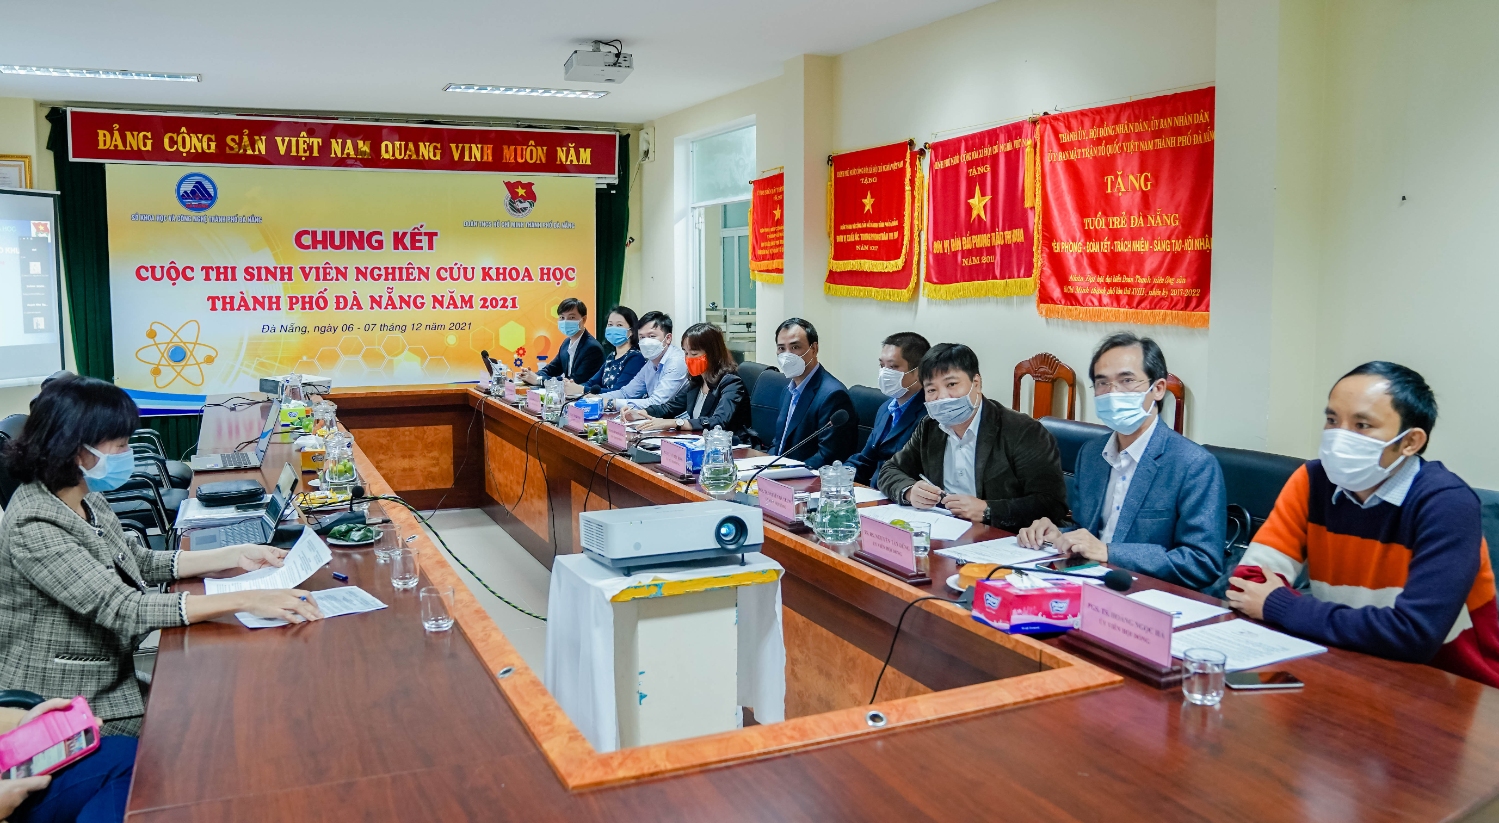 Sinh viên Đại học Đà Nẵng xuất sắc đạt các giải thưởng cao nhất tại Chung kết Cuộc thi Sinh viên nghiên cứu khoa học thành phố Đà Nẵng năm 2021